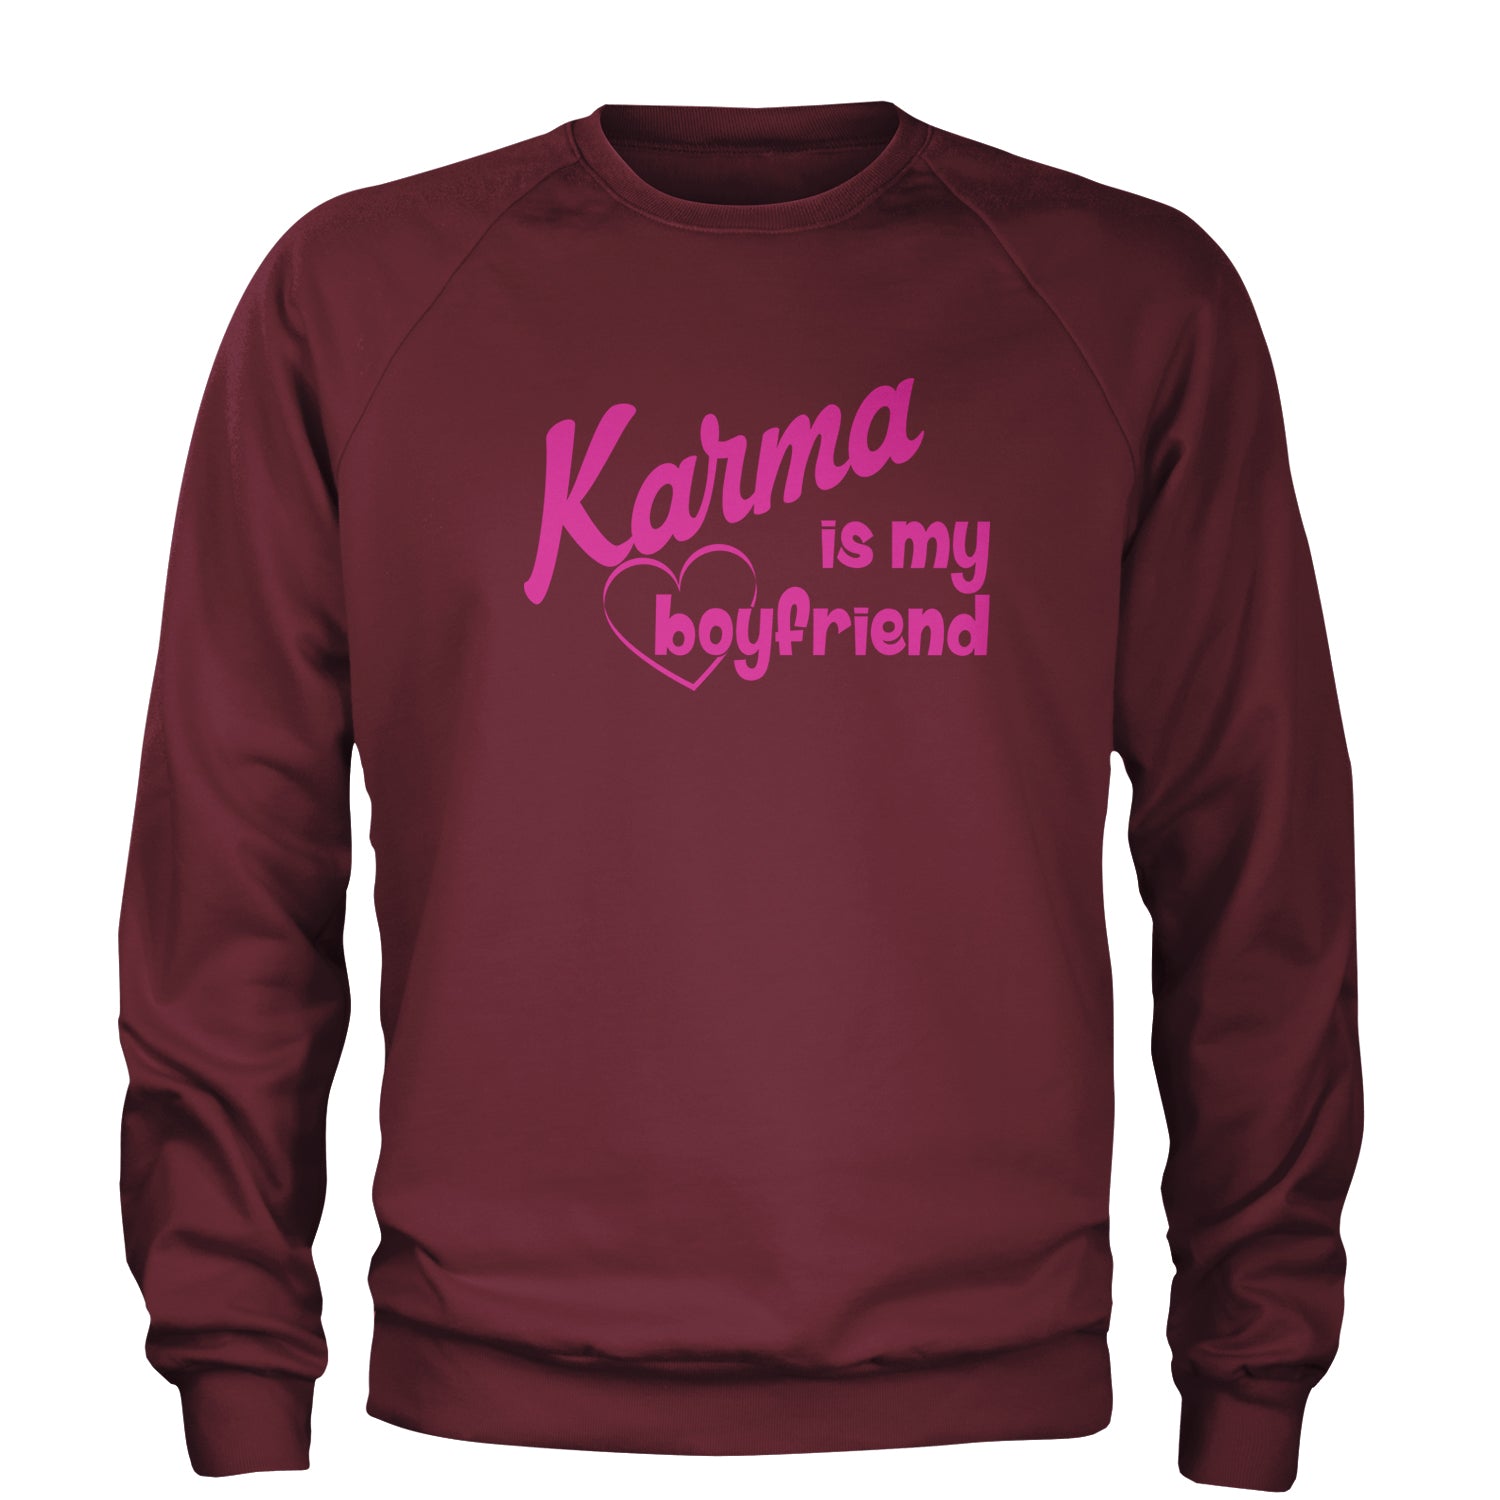 Karma Is My Boyfriend Adult Crewneck Sweatshirt nation, taylornation by Expression Tees